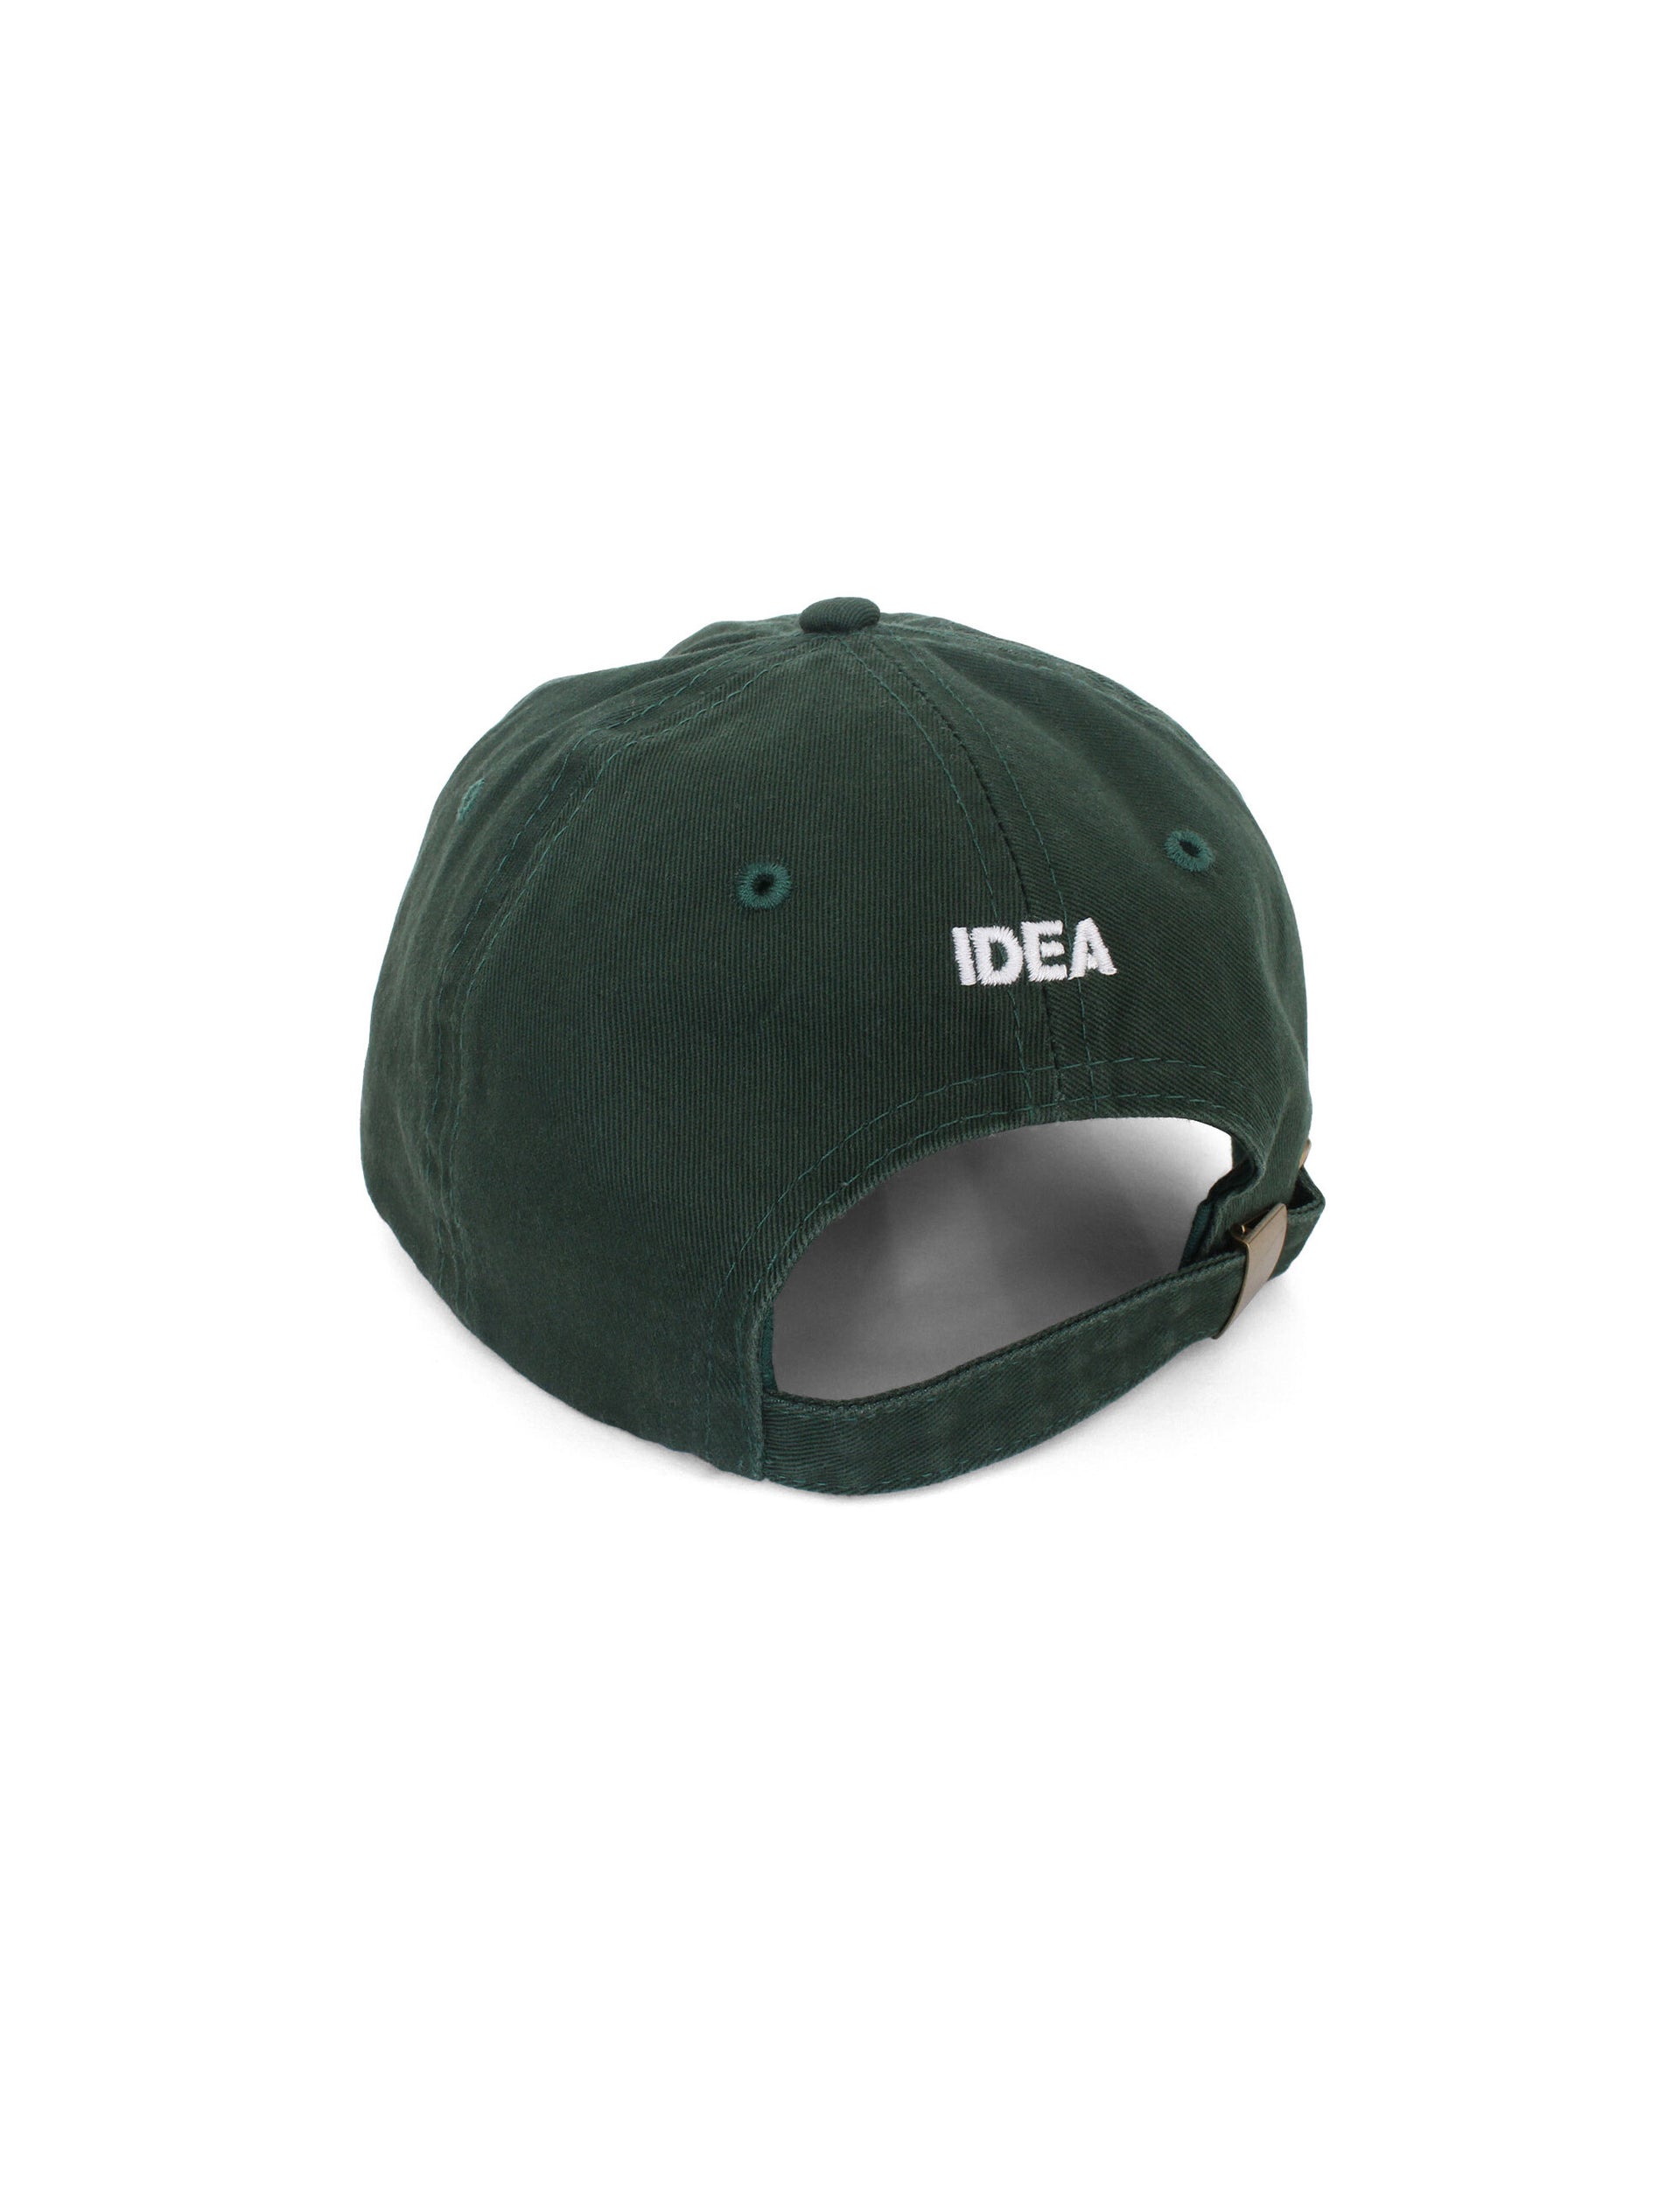 IDEA MOOMIN GROKE IN GREEN Hat